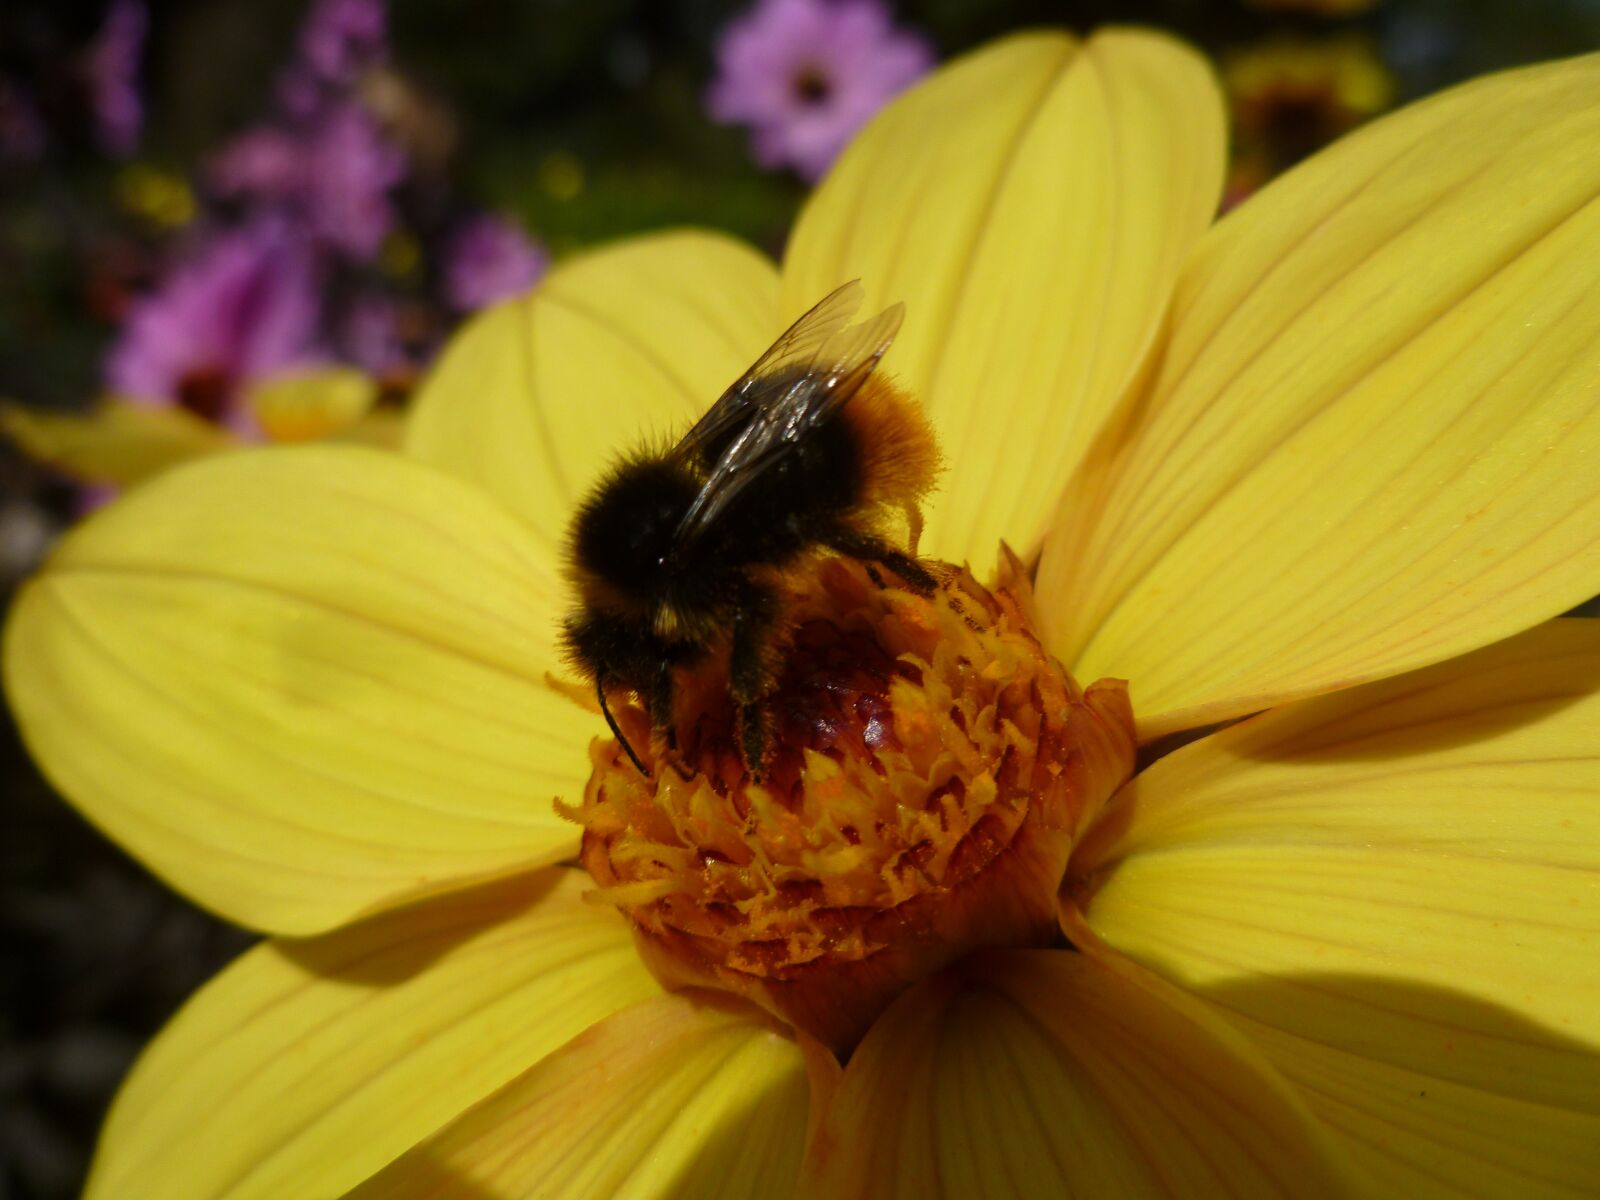 Panasonic DMC-FS30 sample photo. Yellow flower, bee, nature photography